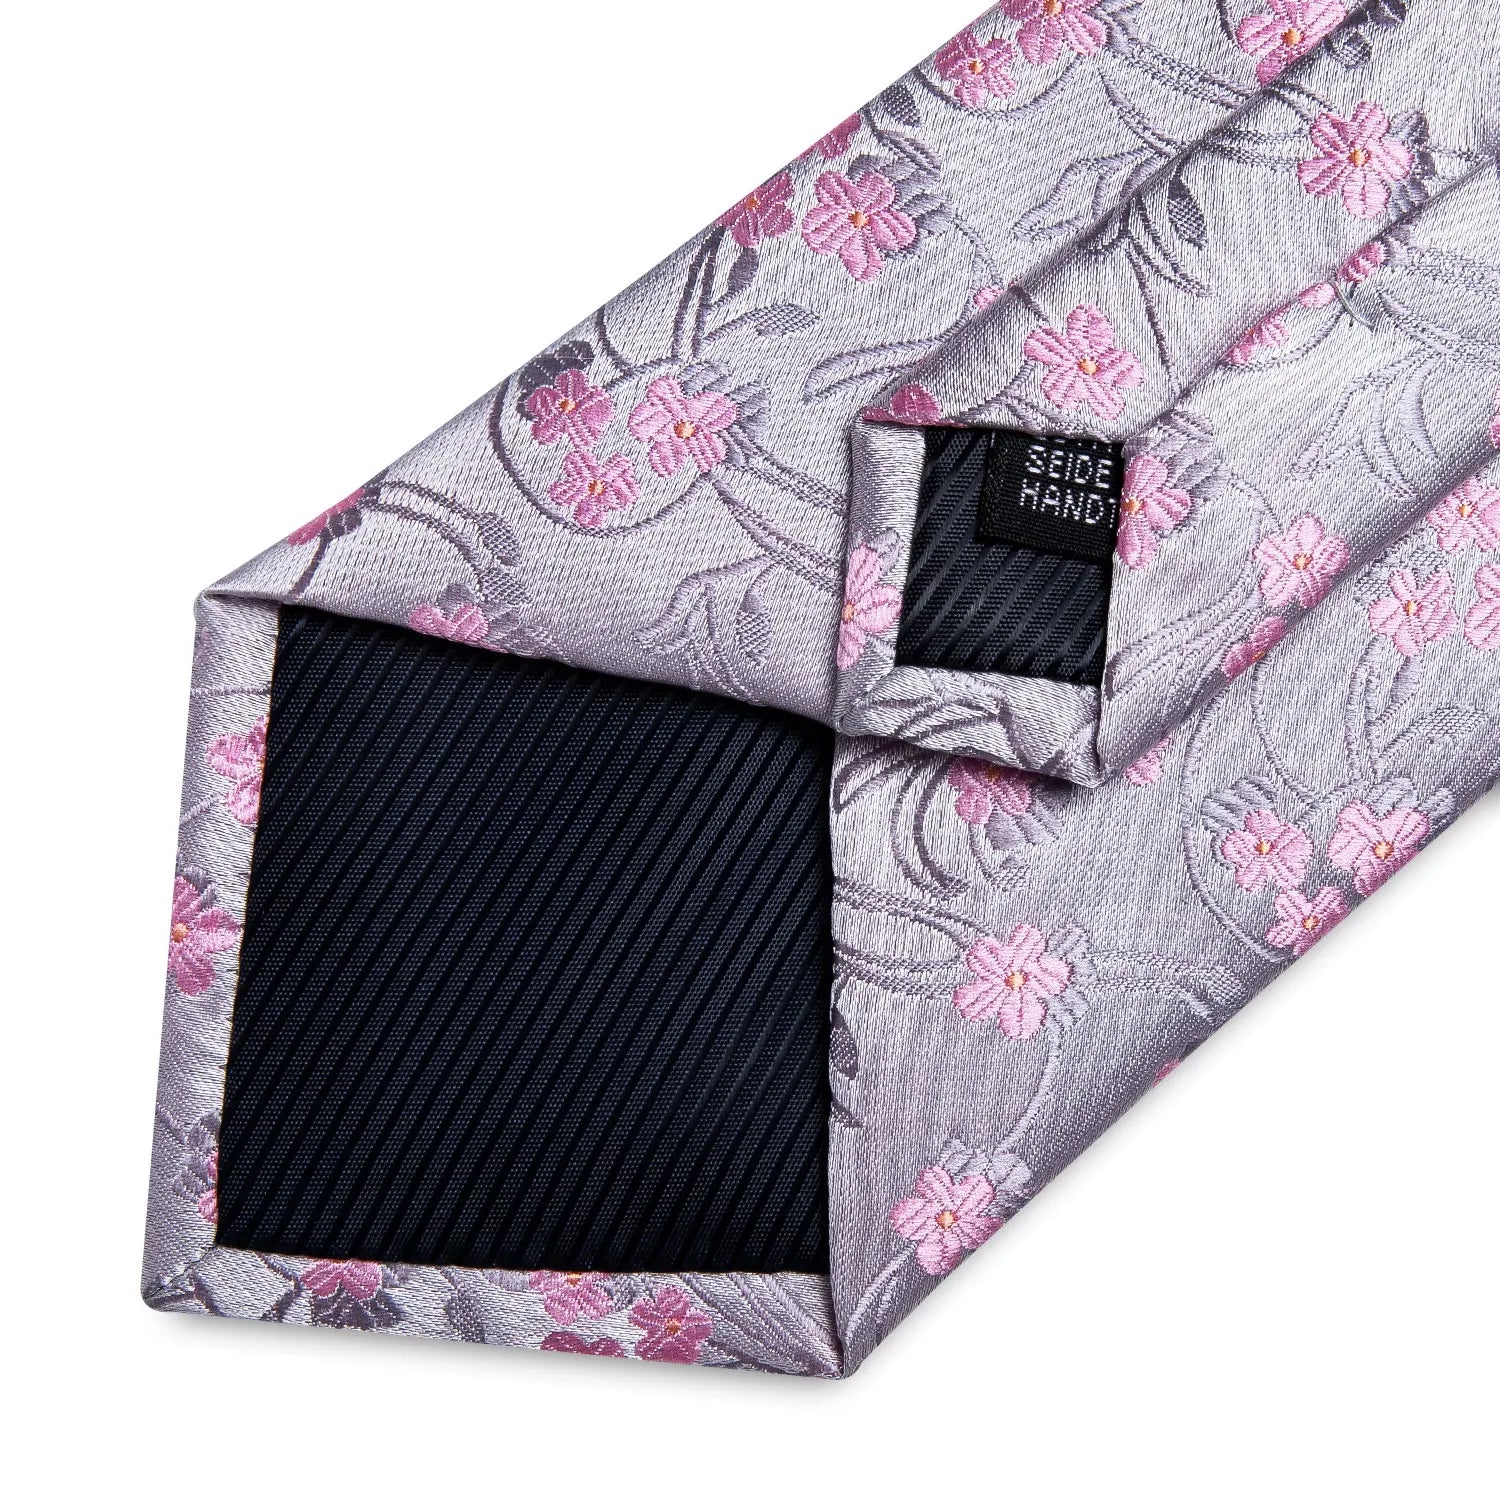 Luxury DiBanGu 100% Silk Floral Pink Necktie with Pocket Square Brooch and Cufflinks Set